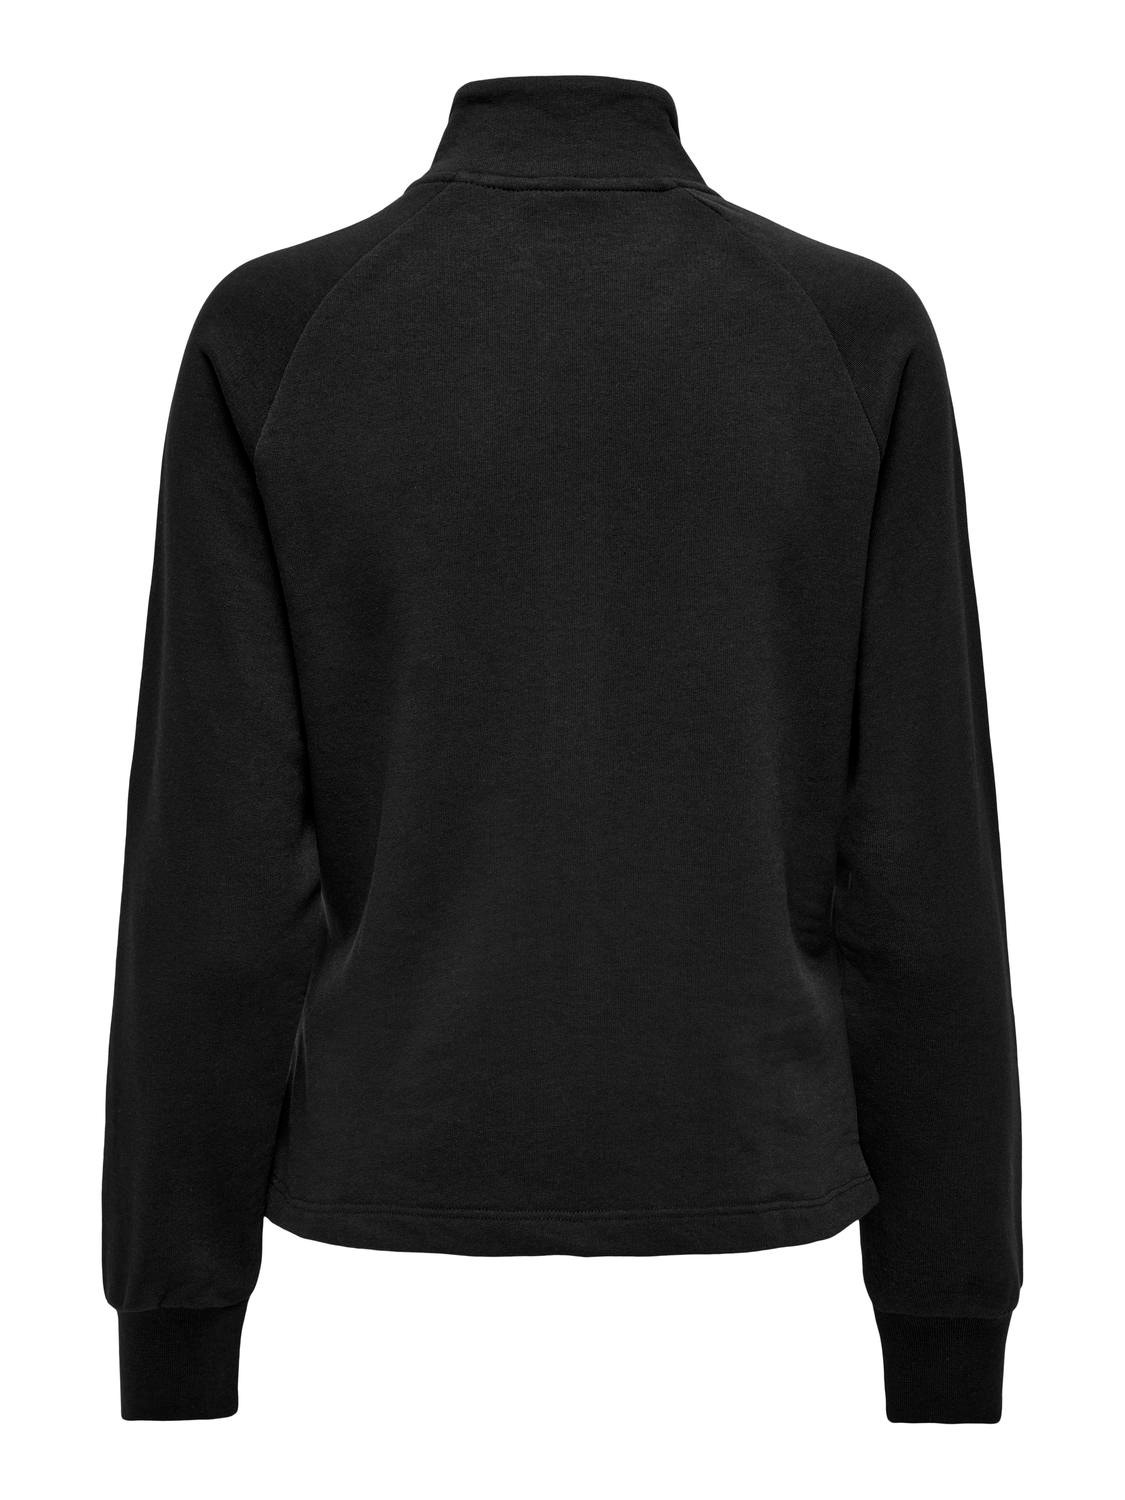 Buy Baleaf Women's Jersey Top Long Sleeve Zip Cardigan Sportswear